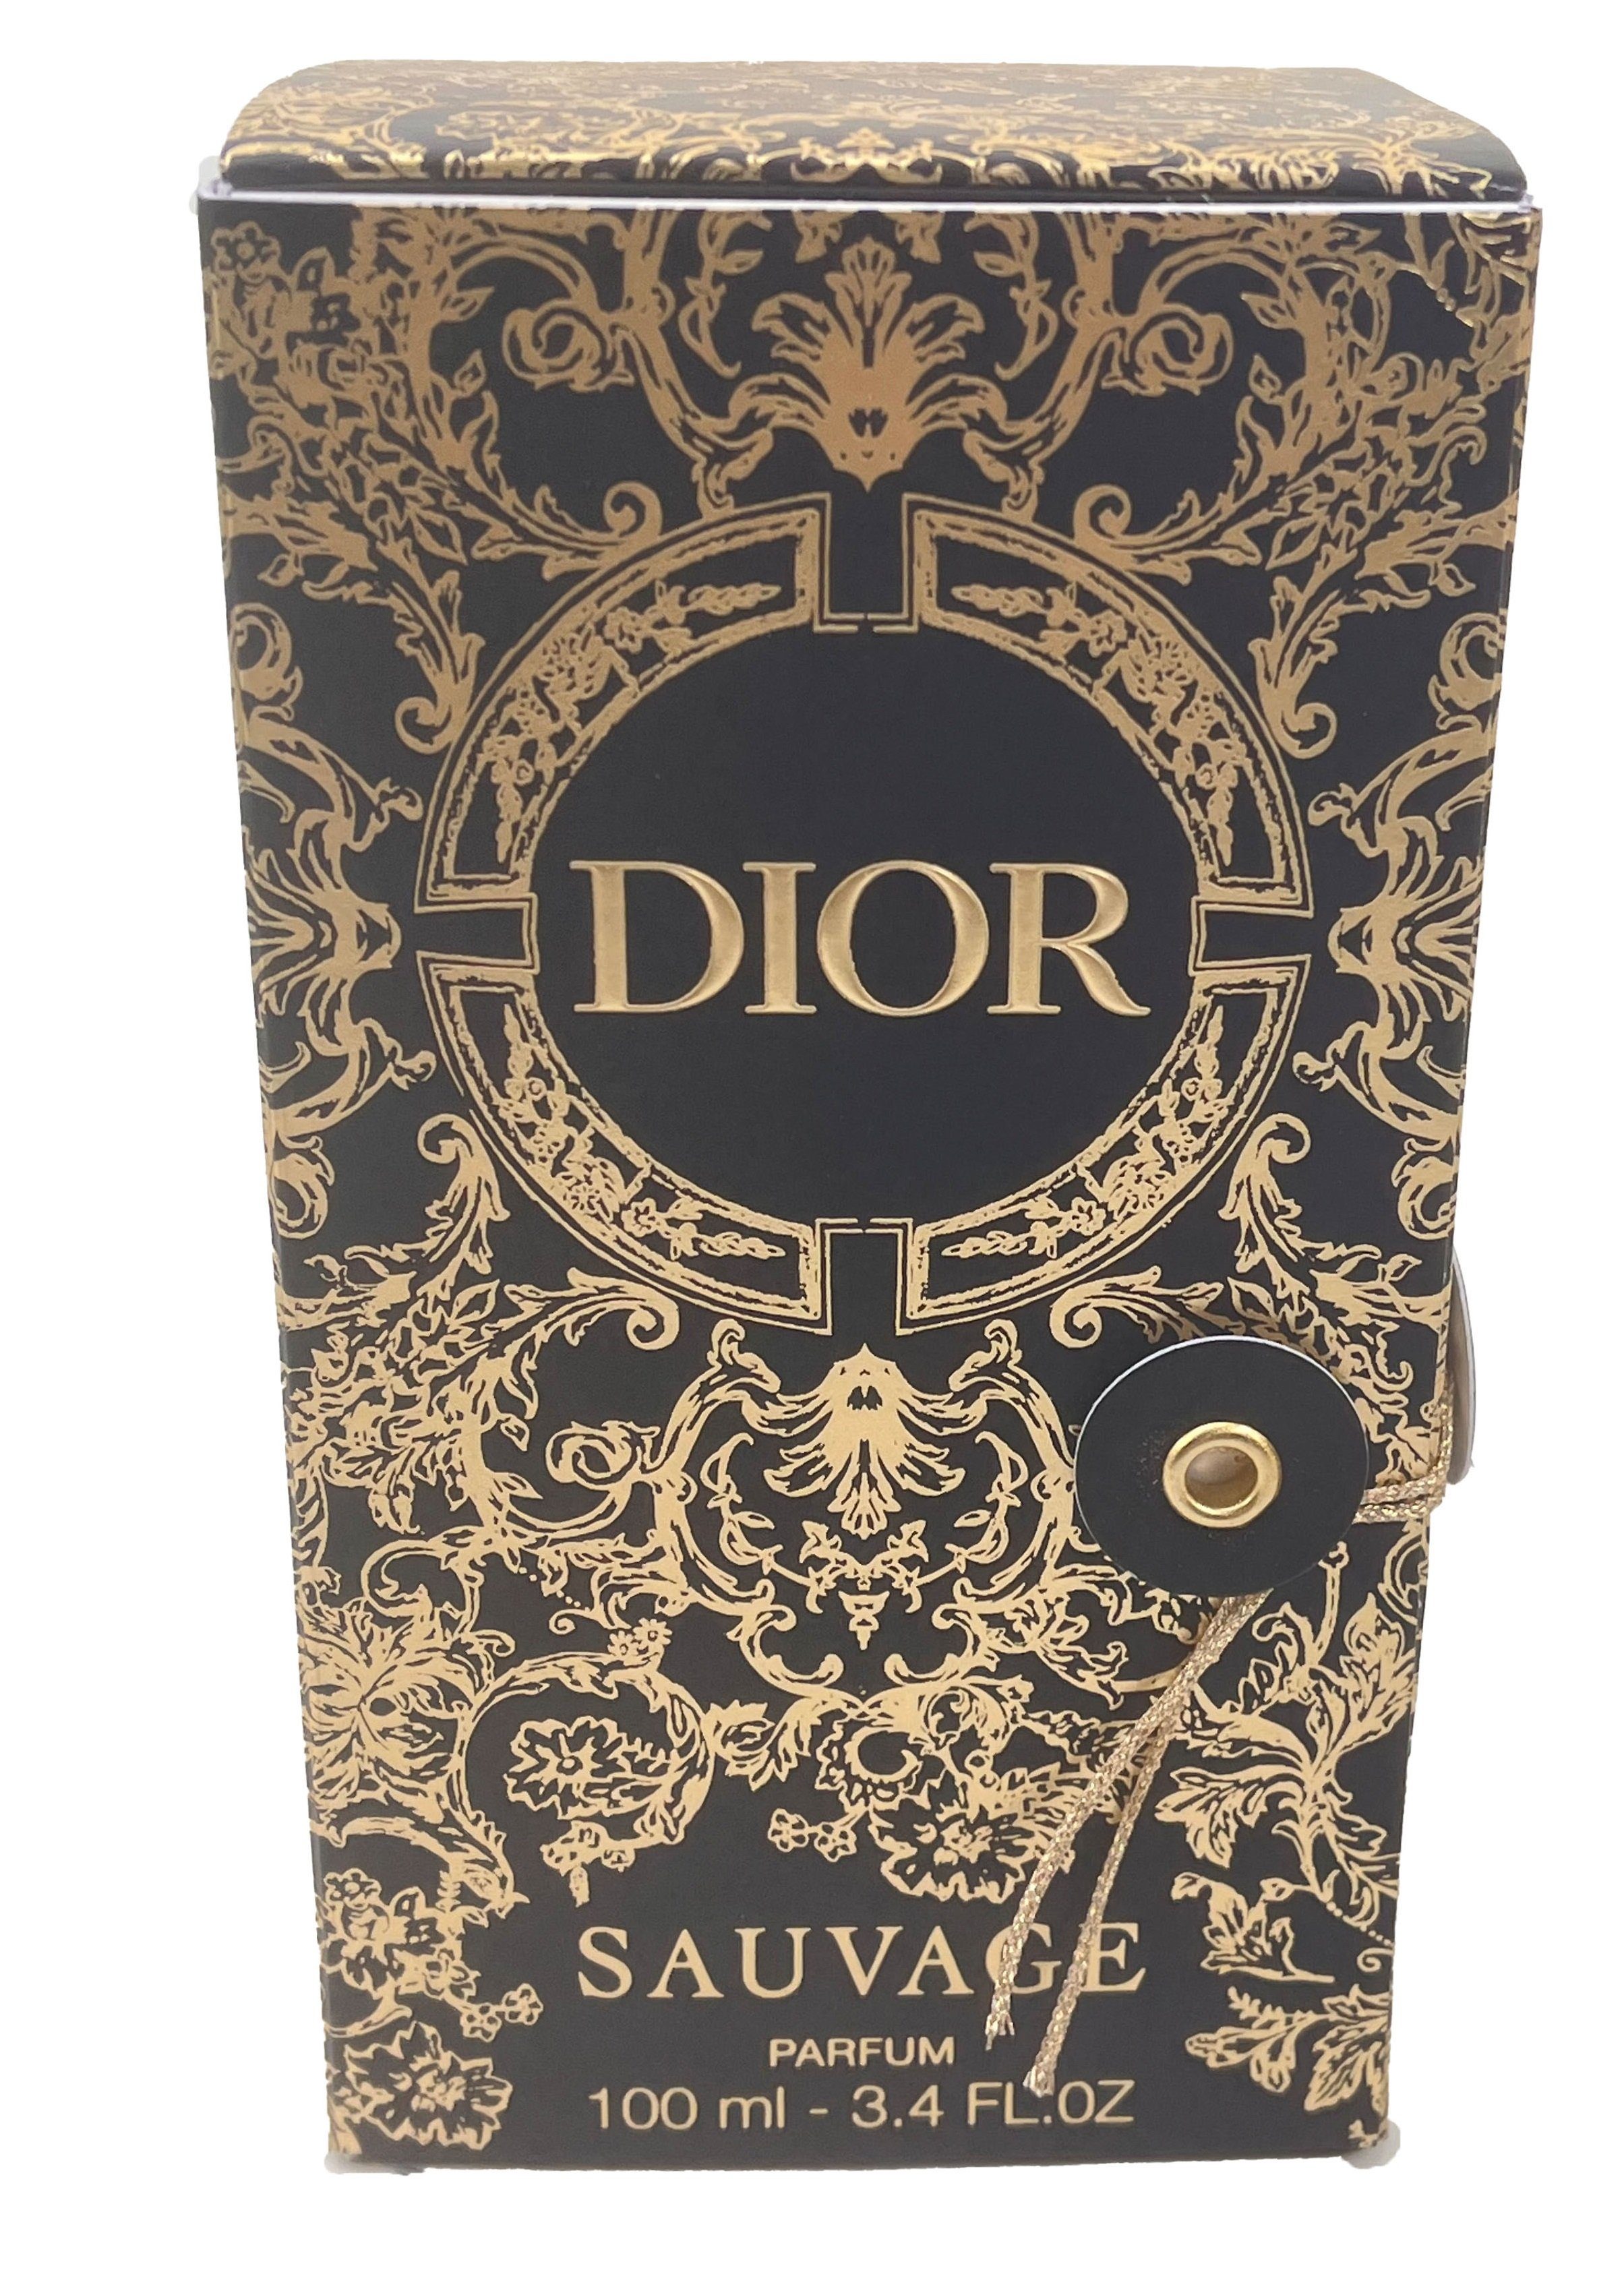 Dior Extrait Sauvage Parfum Nikolaus,Weihnachten für limitierter Geschenk Spray, ideal Parfum Dior Edition, als